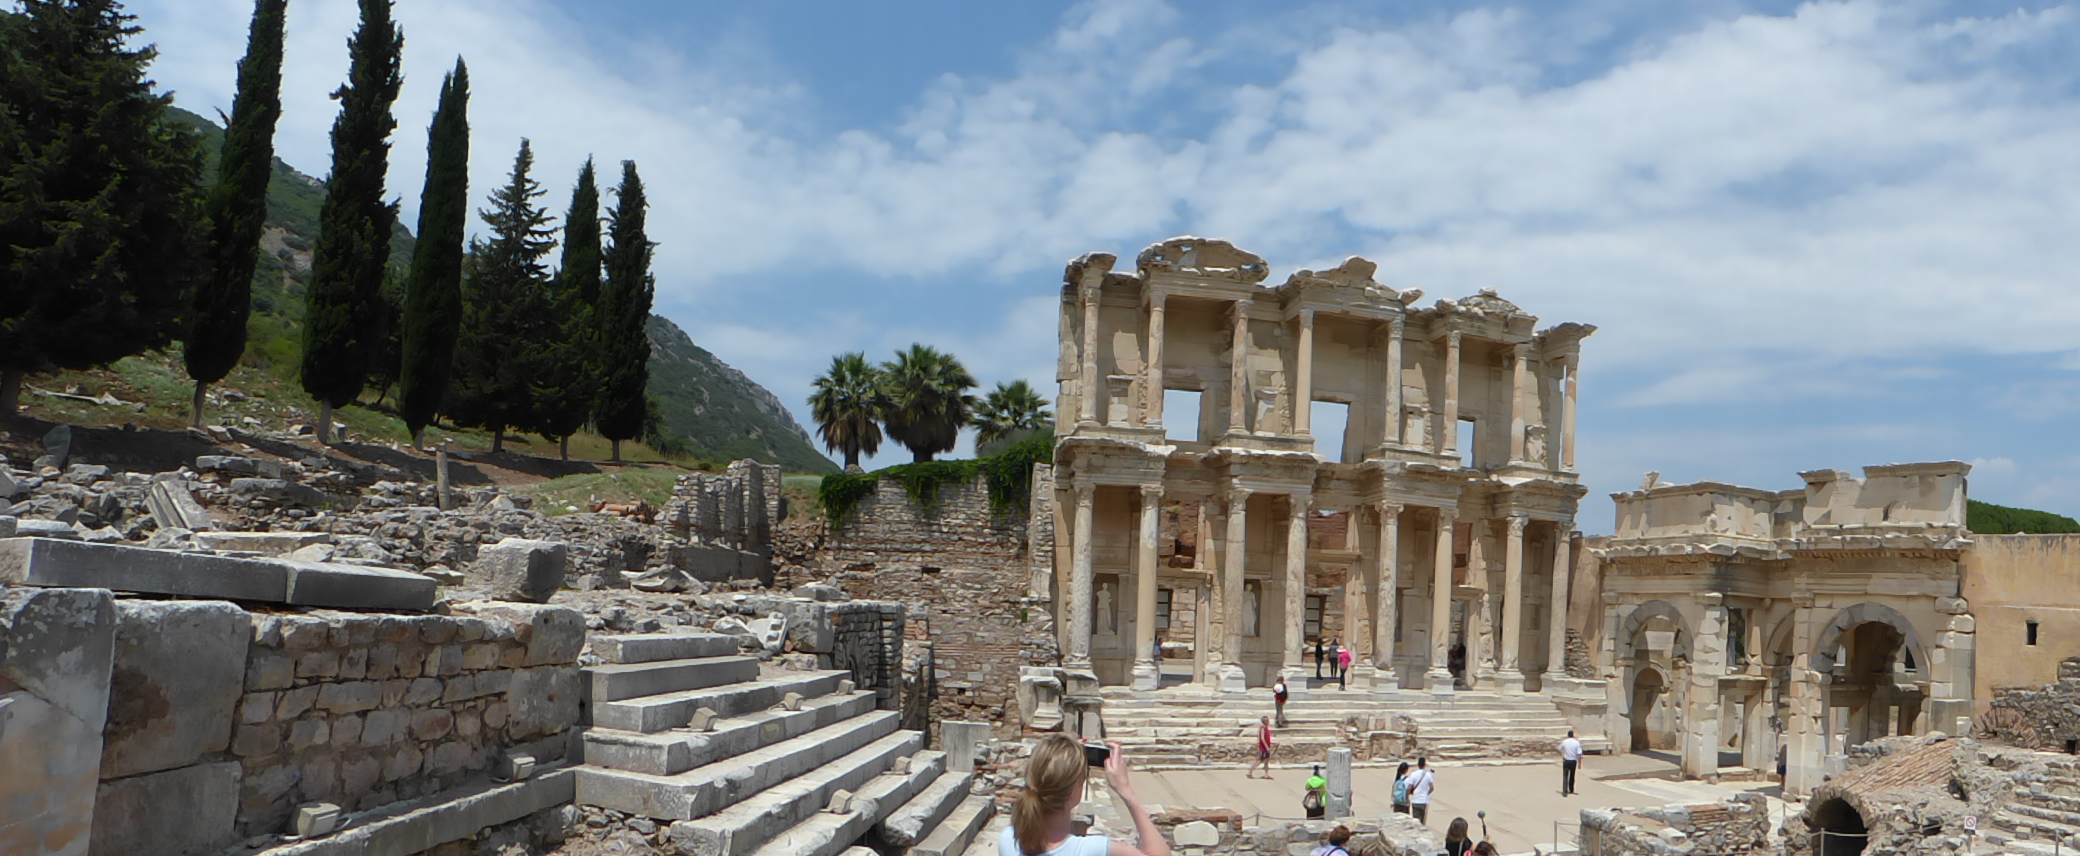 Die wiederaufgebaute Celsus-Bibliothek aus dem frühen 2. Jahrhundert n. Chr. .